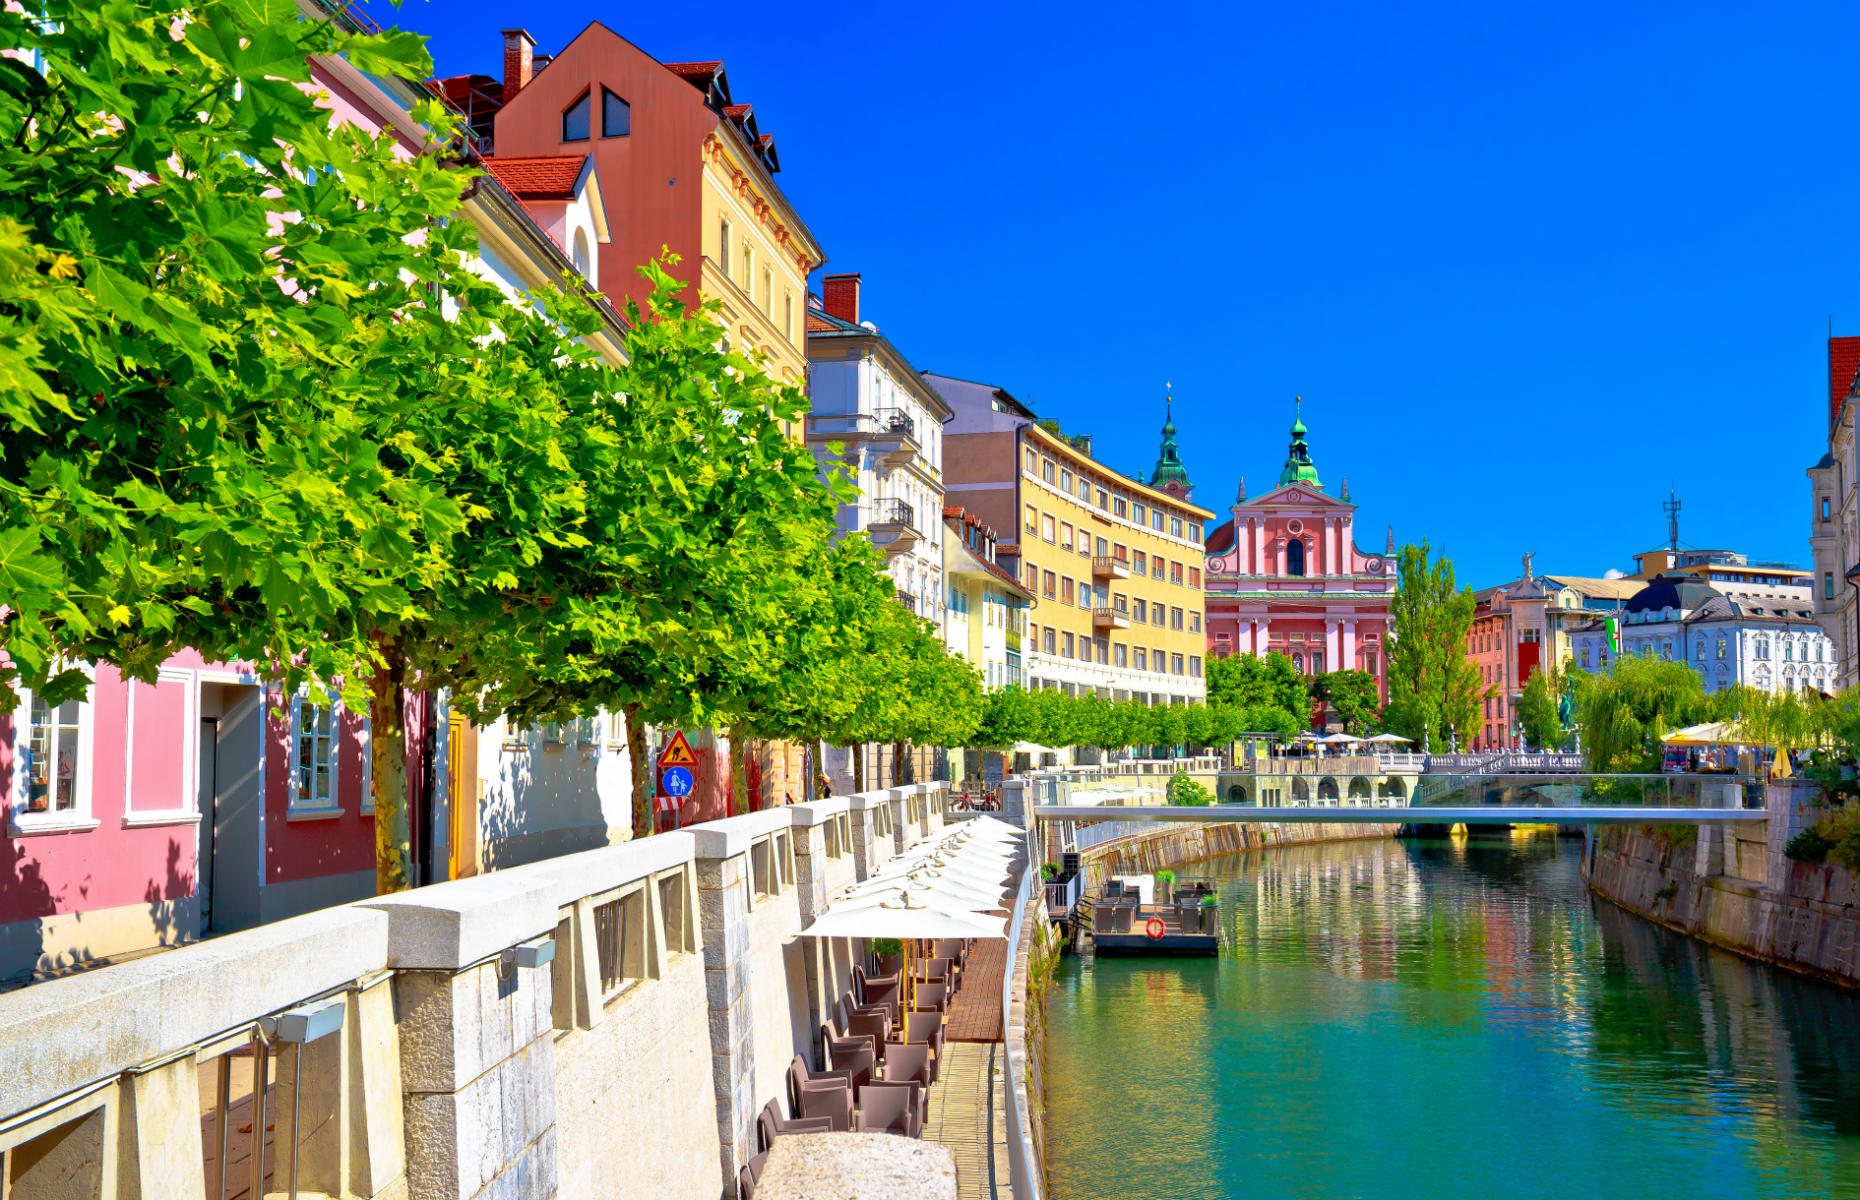 Ljubljana riverfront (Image: xbrchx/Shutterstock)